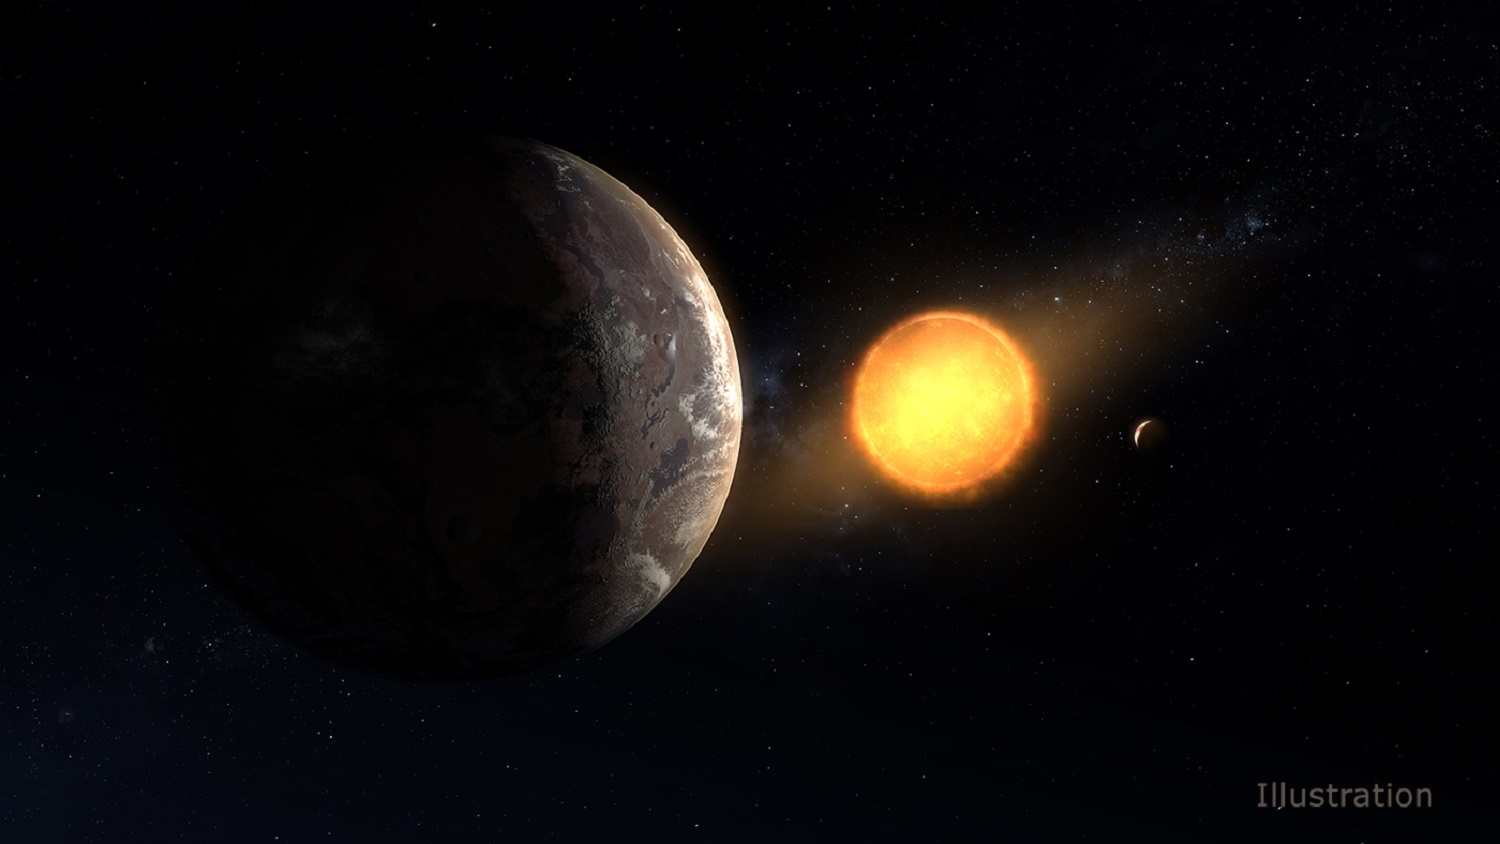 Exoplanet - Kepler-1649c - April 15, 2020